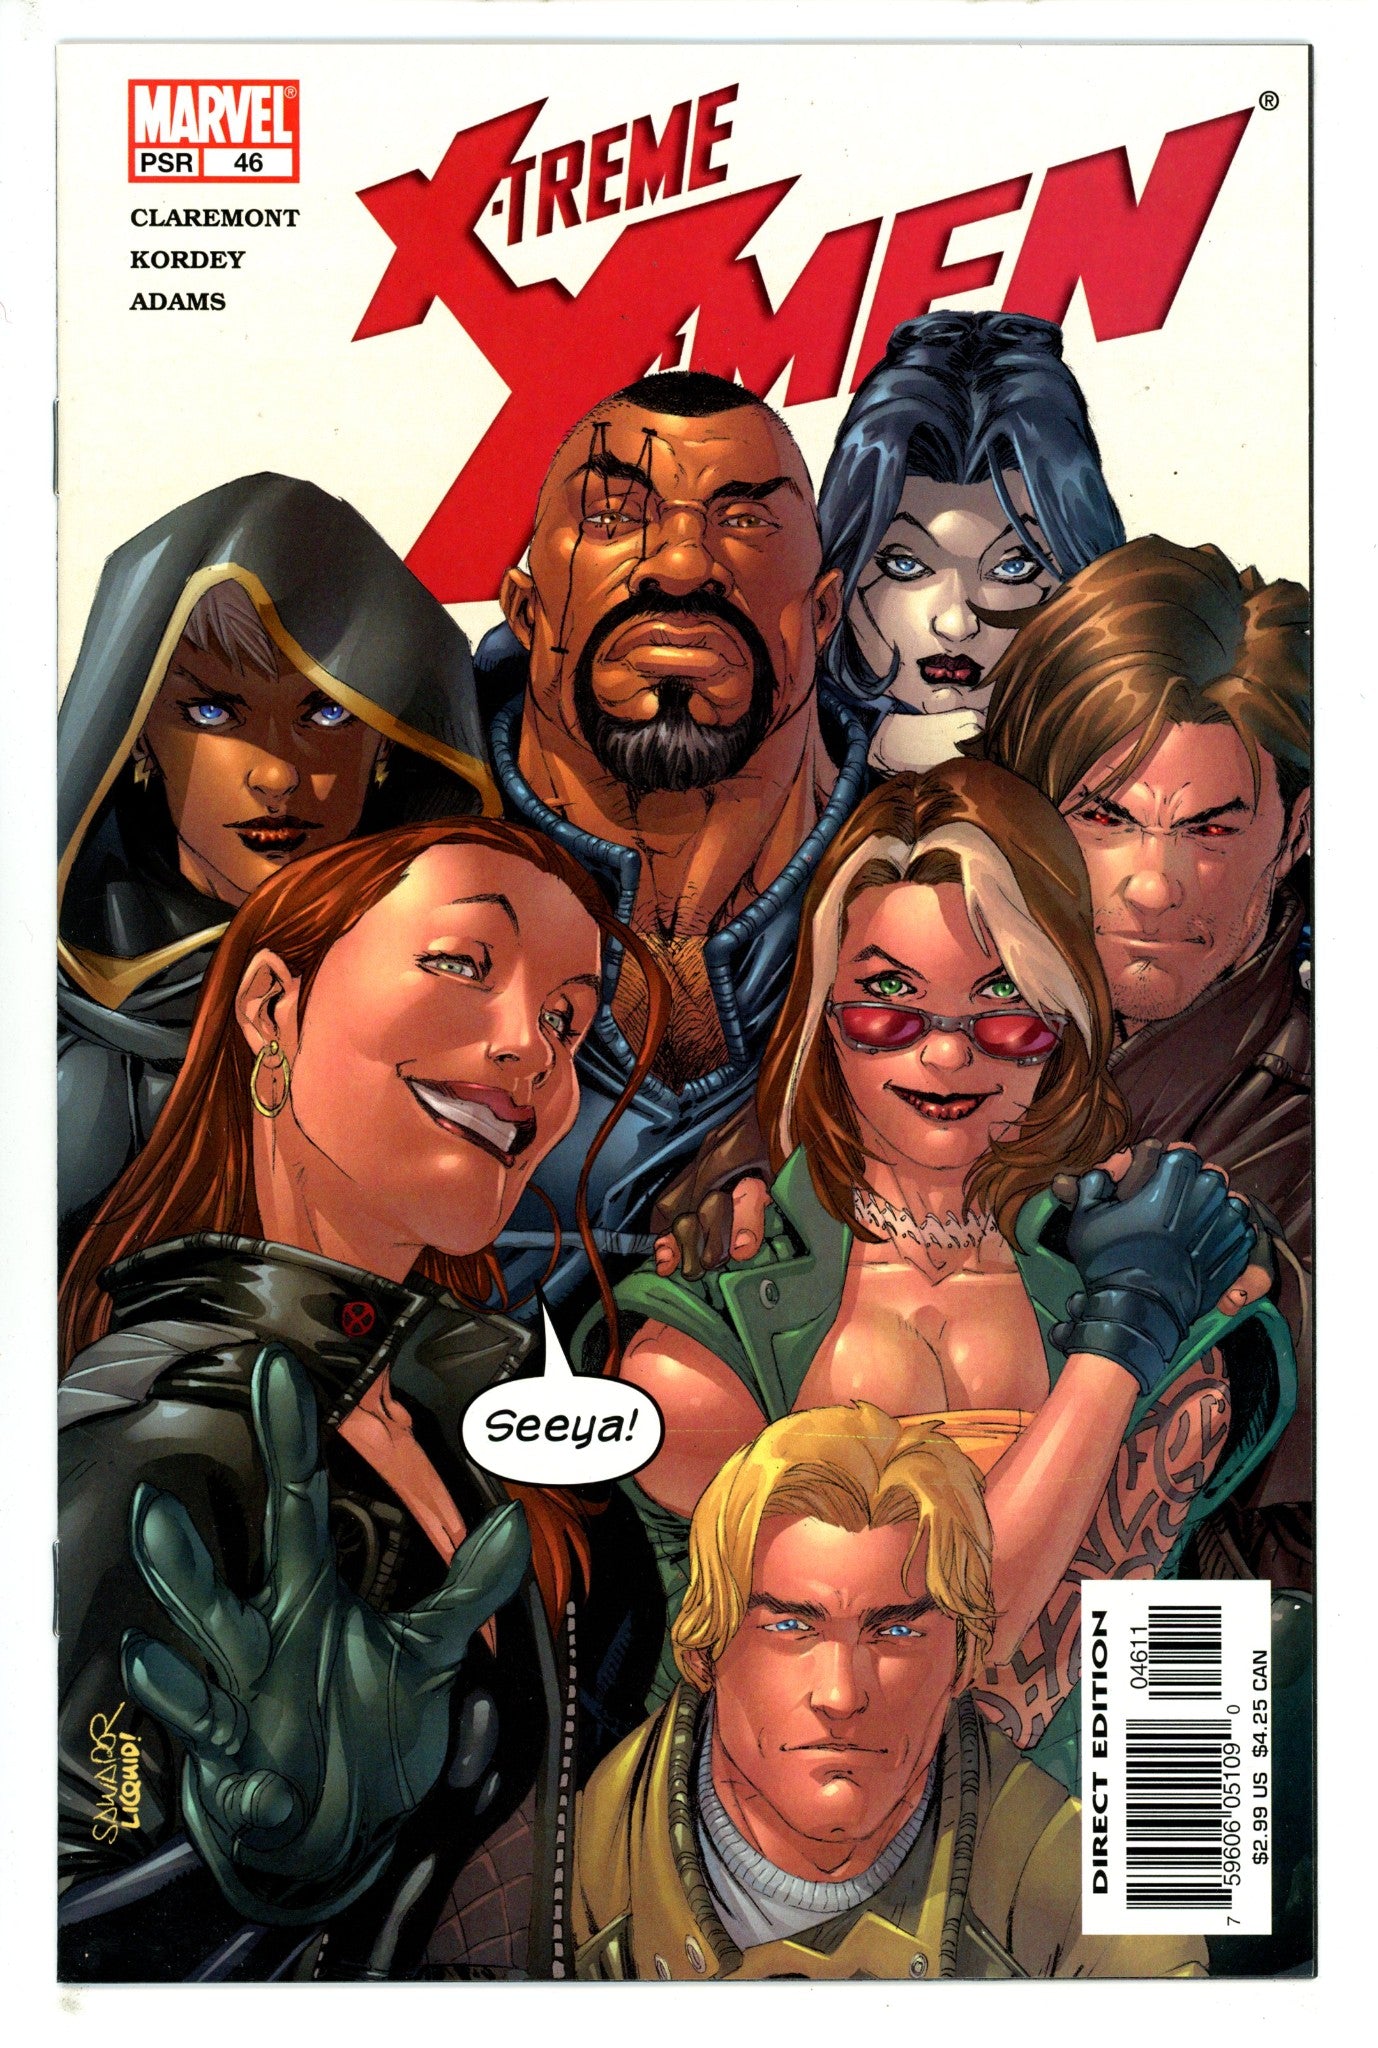 X-Treme X-Men Vol 1 46 (2004)